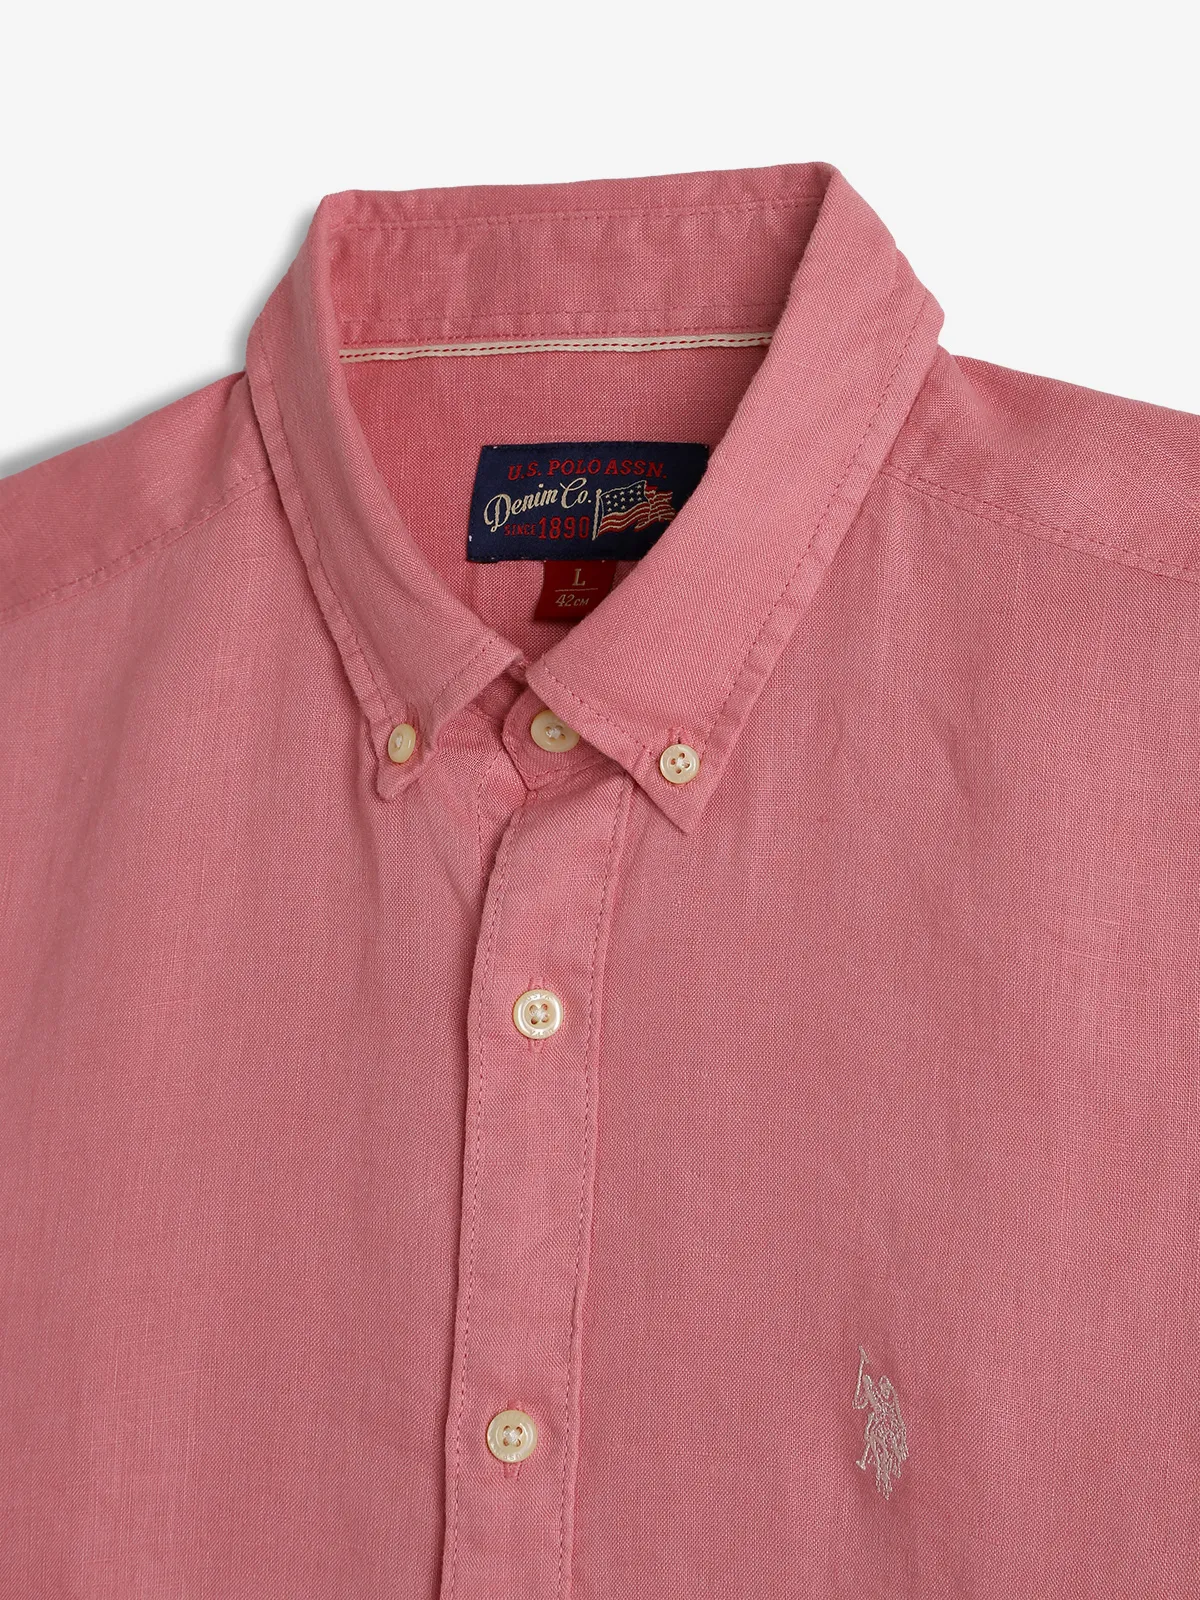 U S POLO ASSN plain cotton pink shirt